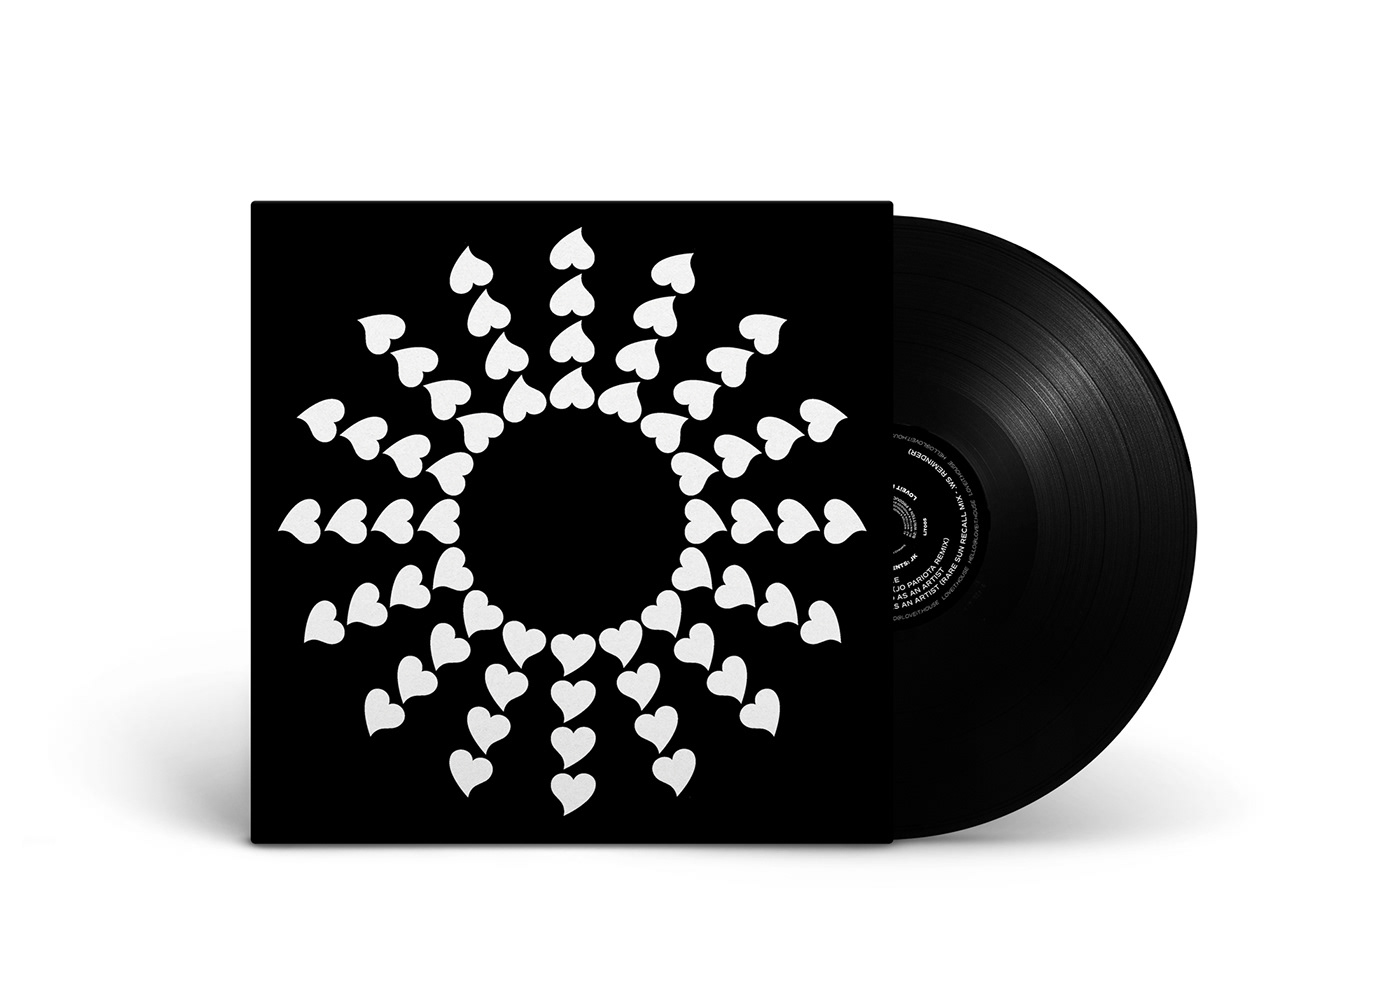 loveit artwork cover spin black White vinyl Records music Program